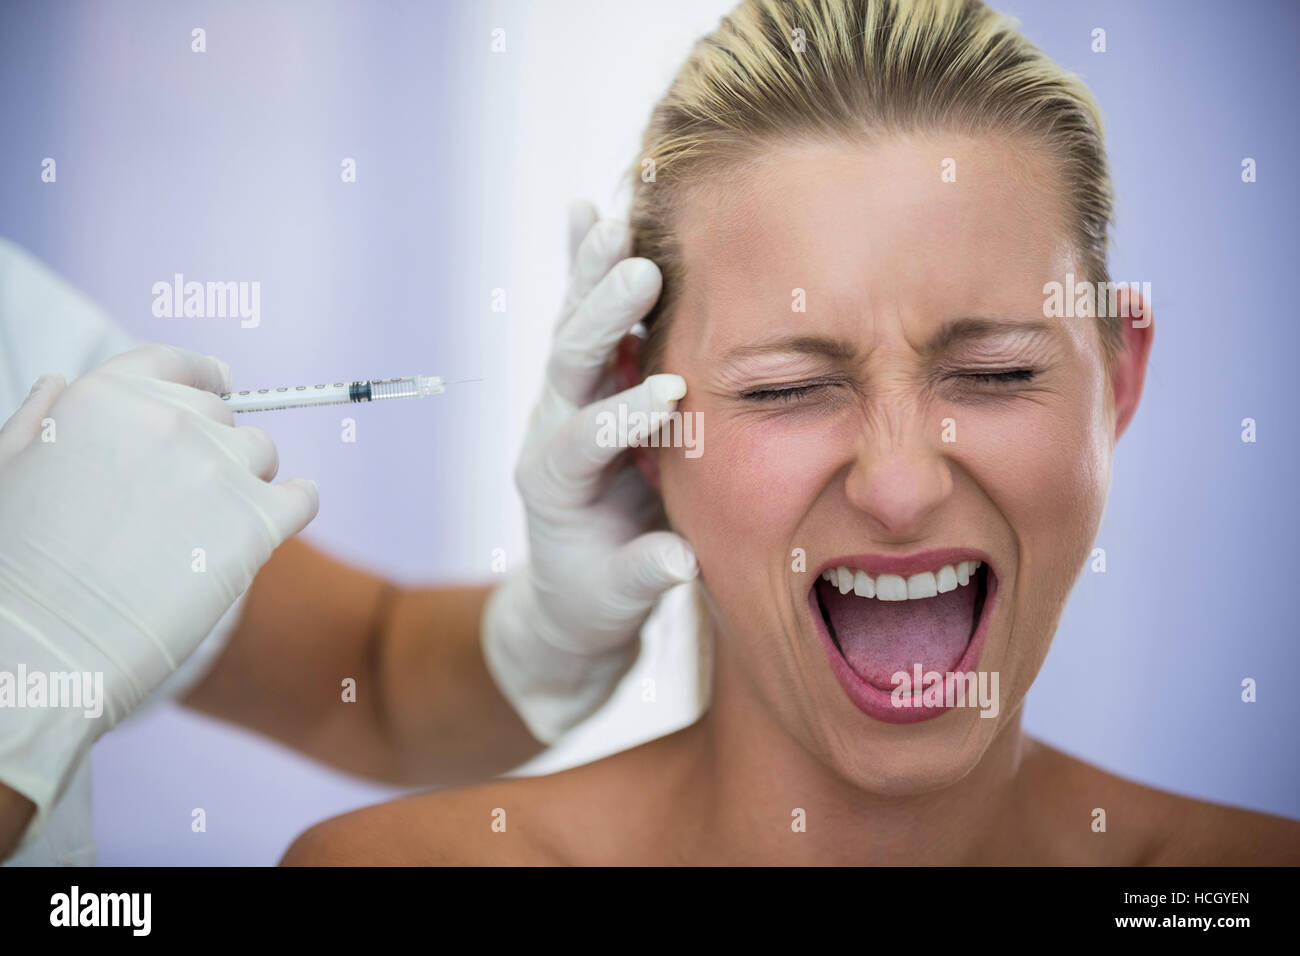 Asustada mujer gritando mientras recibe una inyección de tratamiento cosmético Foto de stock